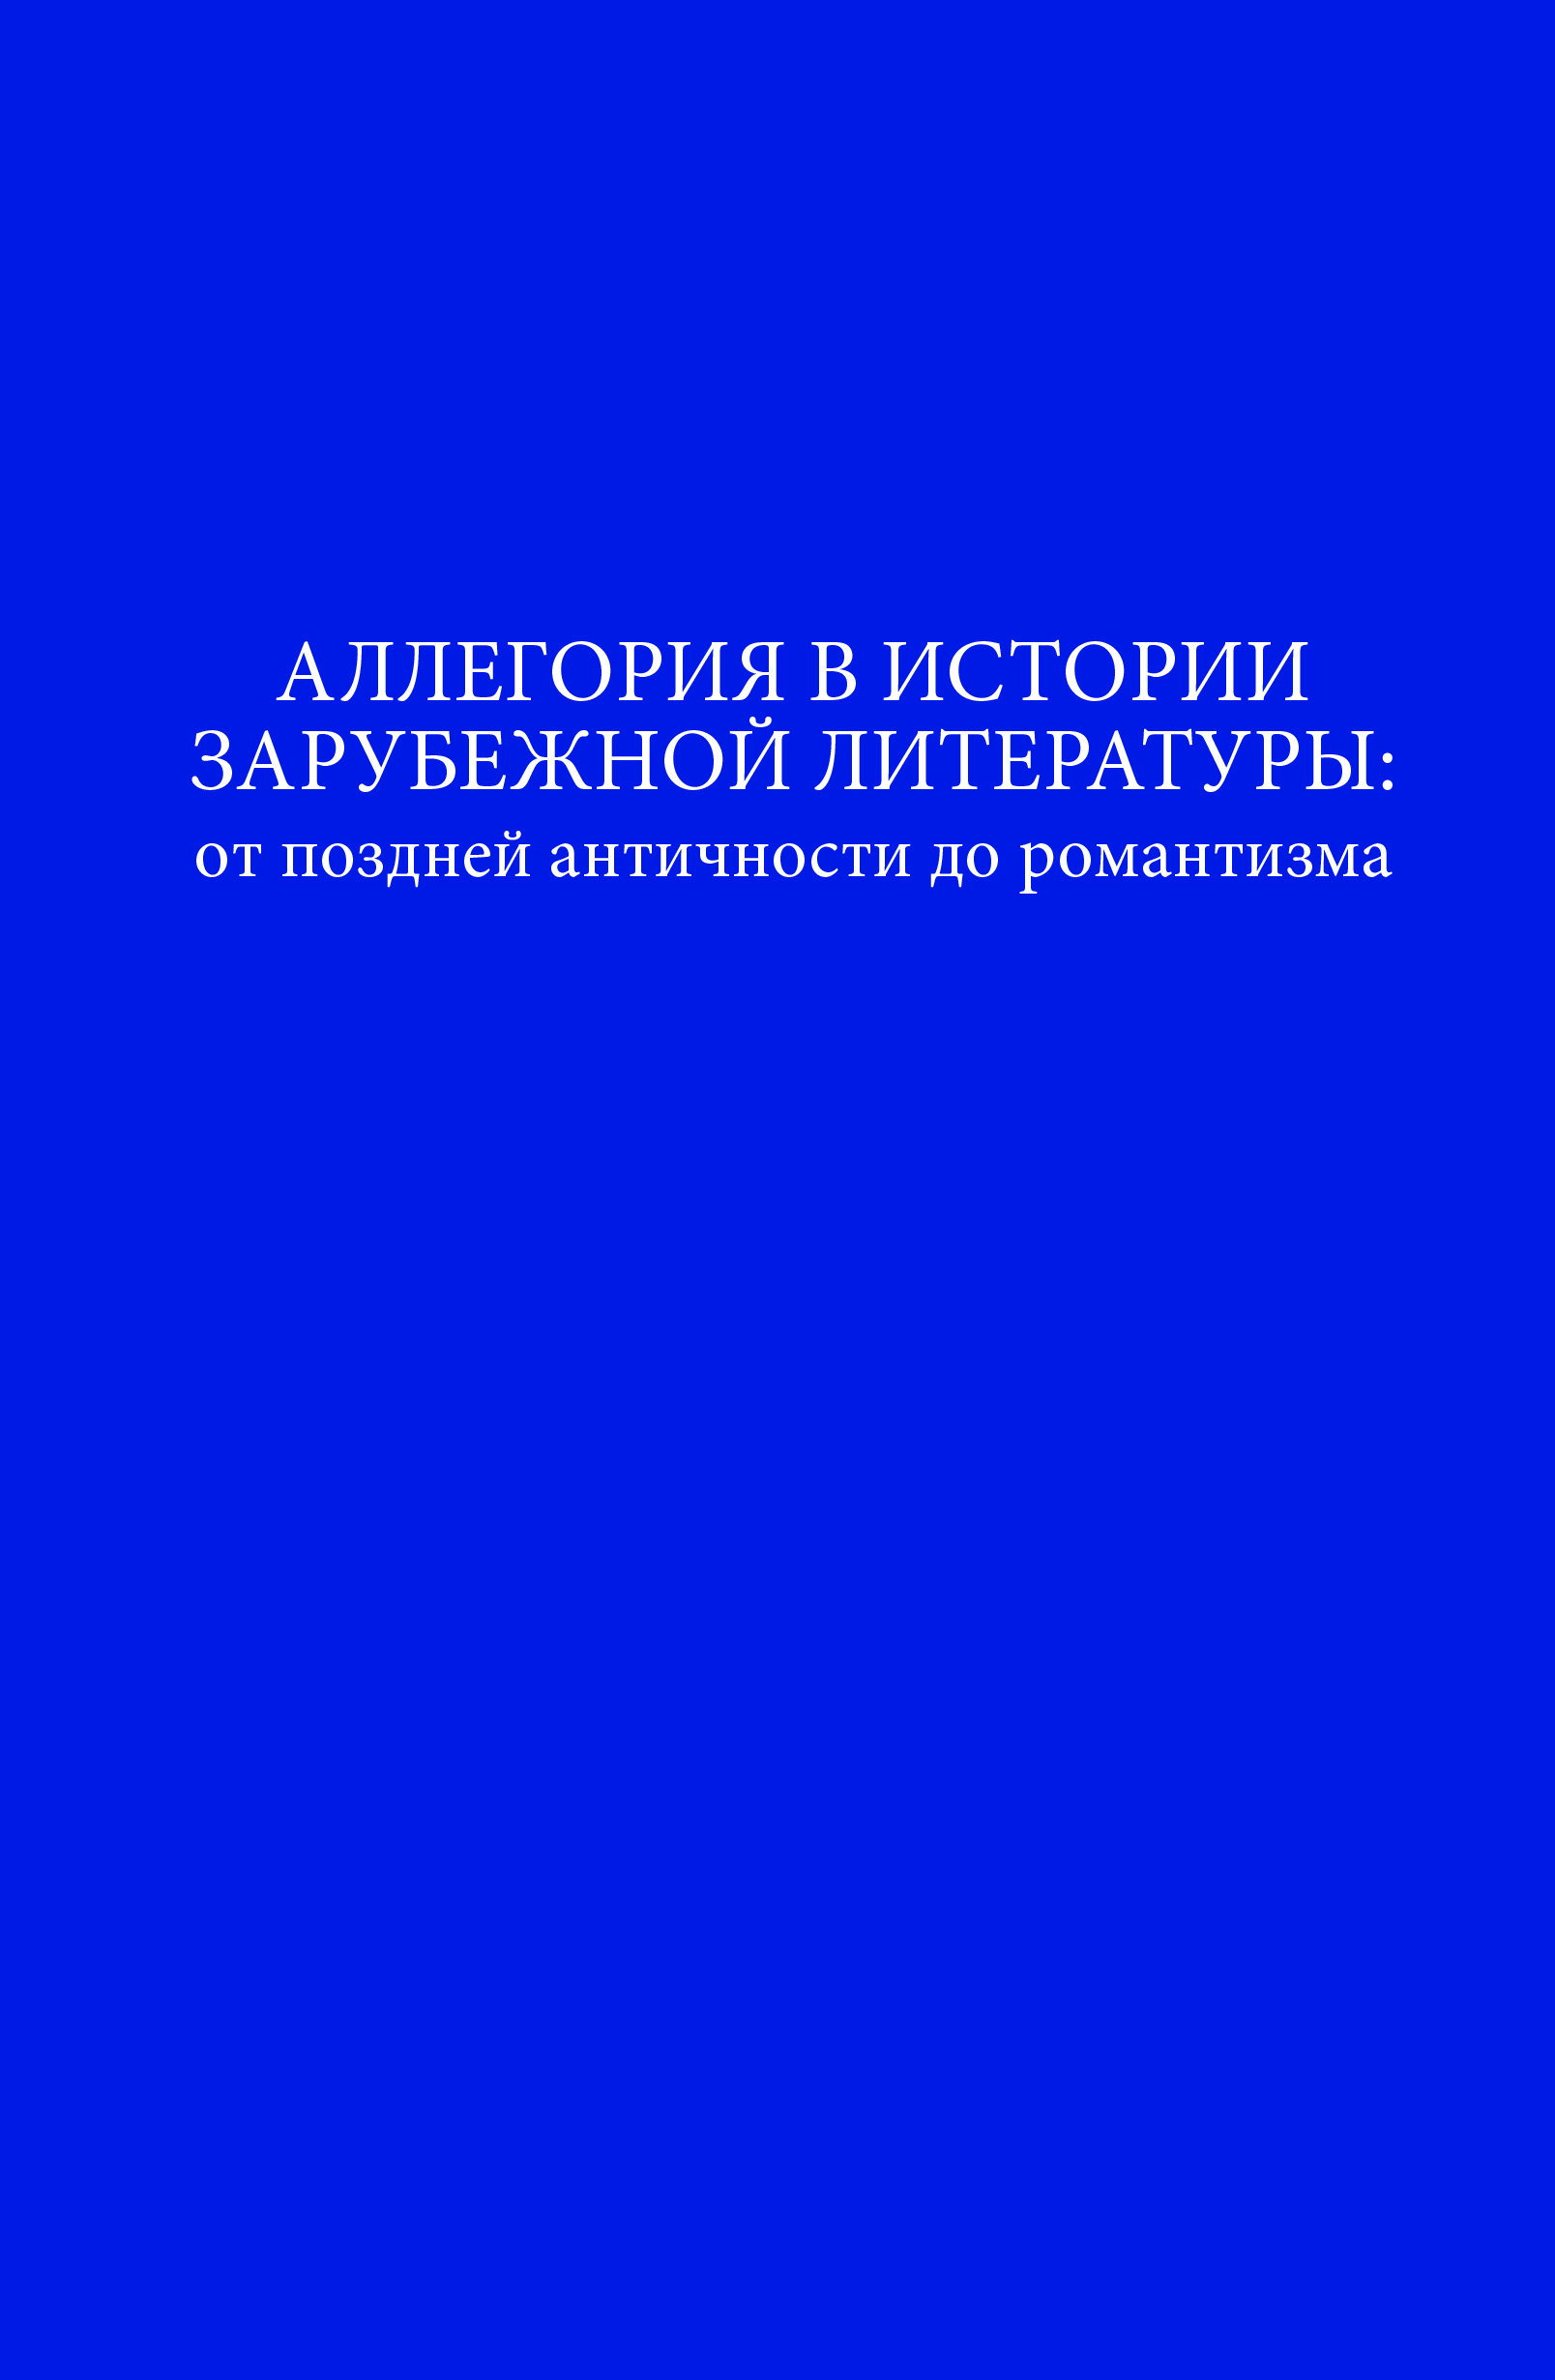 Cover of Аллегория в истории зарубежной литературы: от поздней античности до романтизма